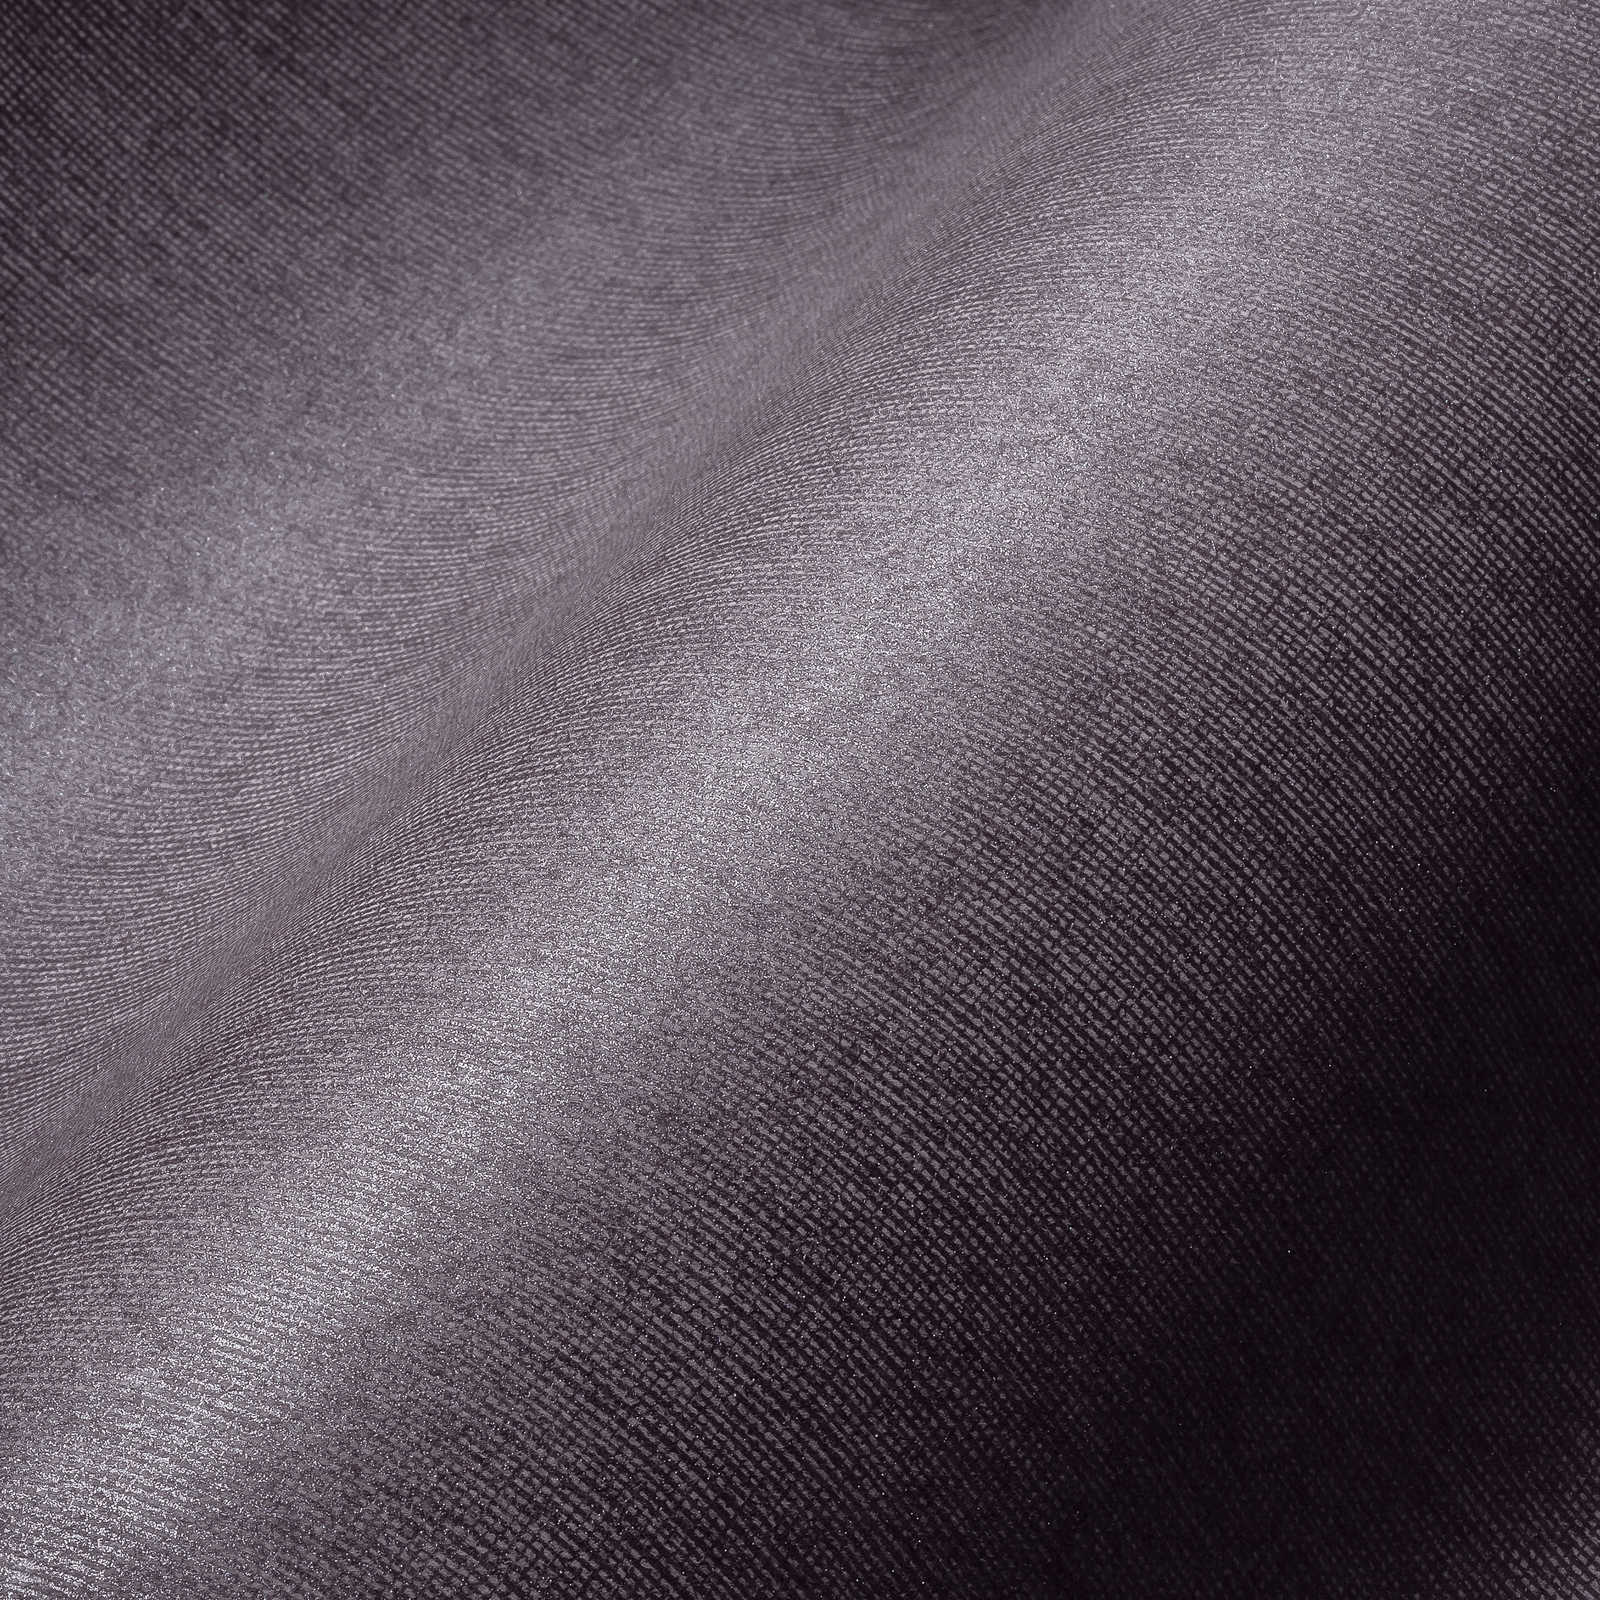             Glanz Tapete mit Textilstruktur & Schimmer Effekt – Lila, Grau
        